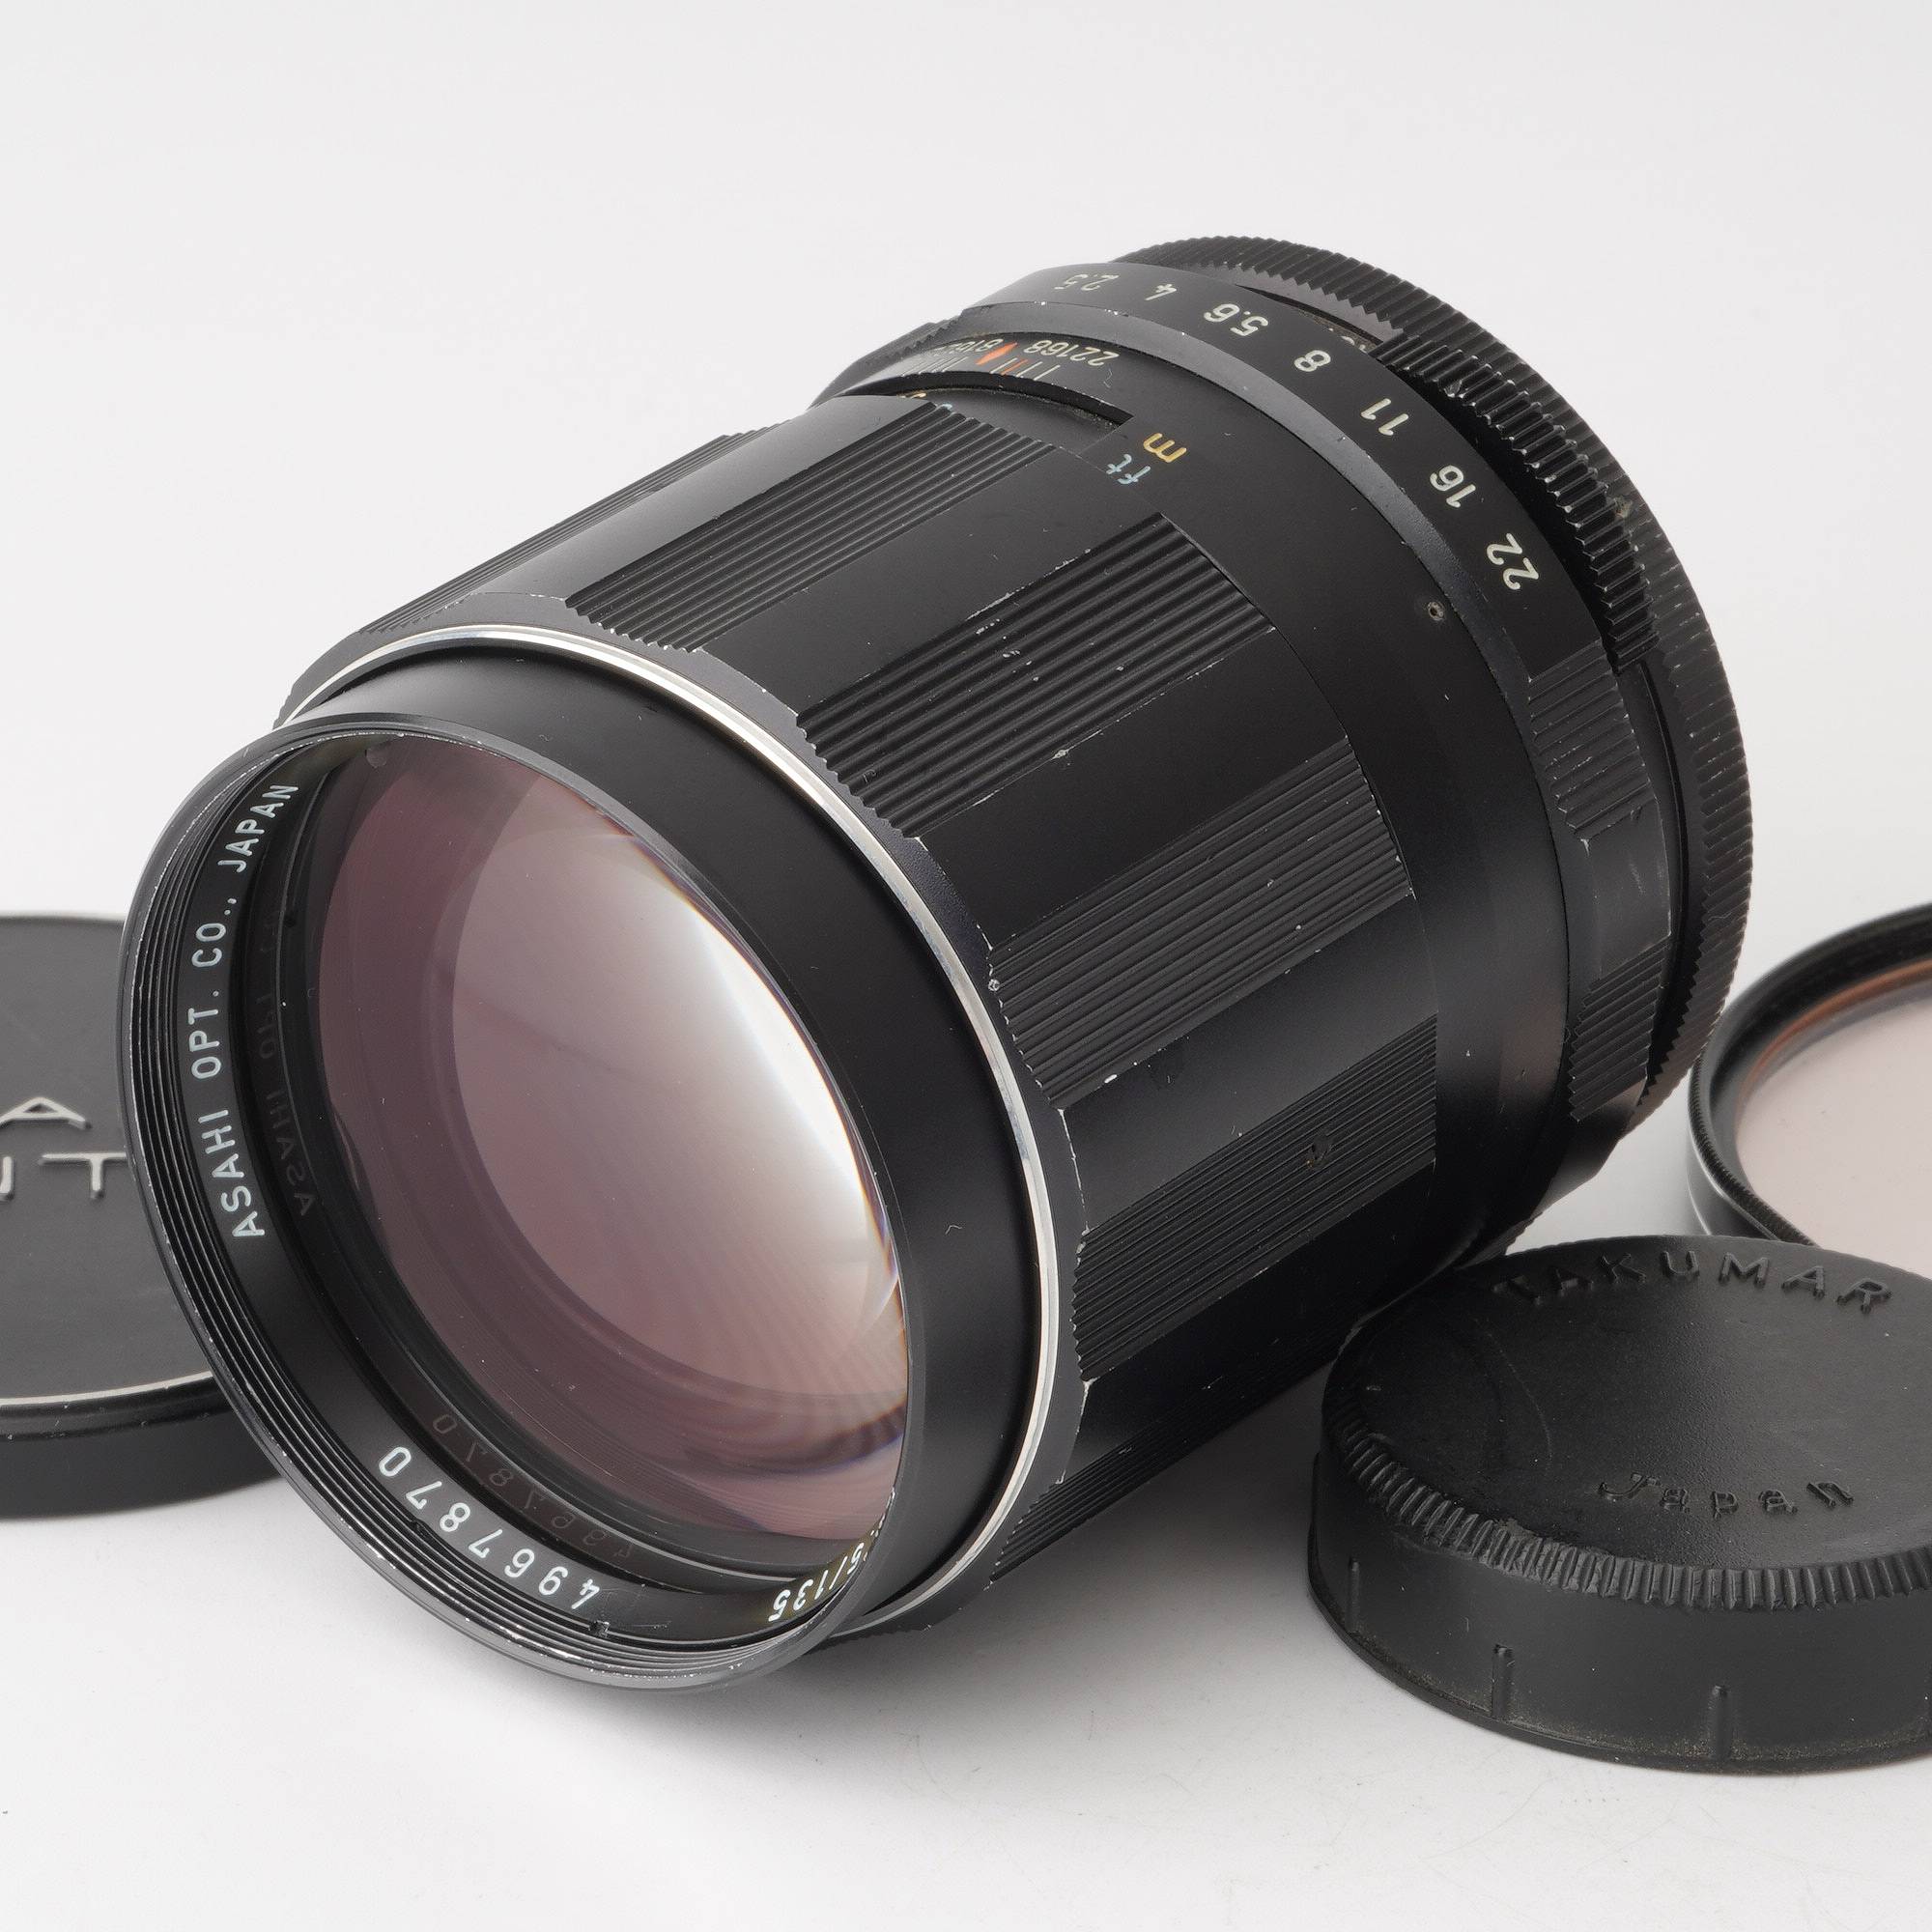 Asahi Takumar 135mm f3.5 望遠レンズ - レンズ(単焦点)